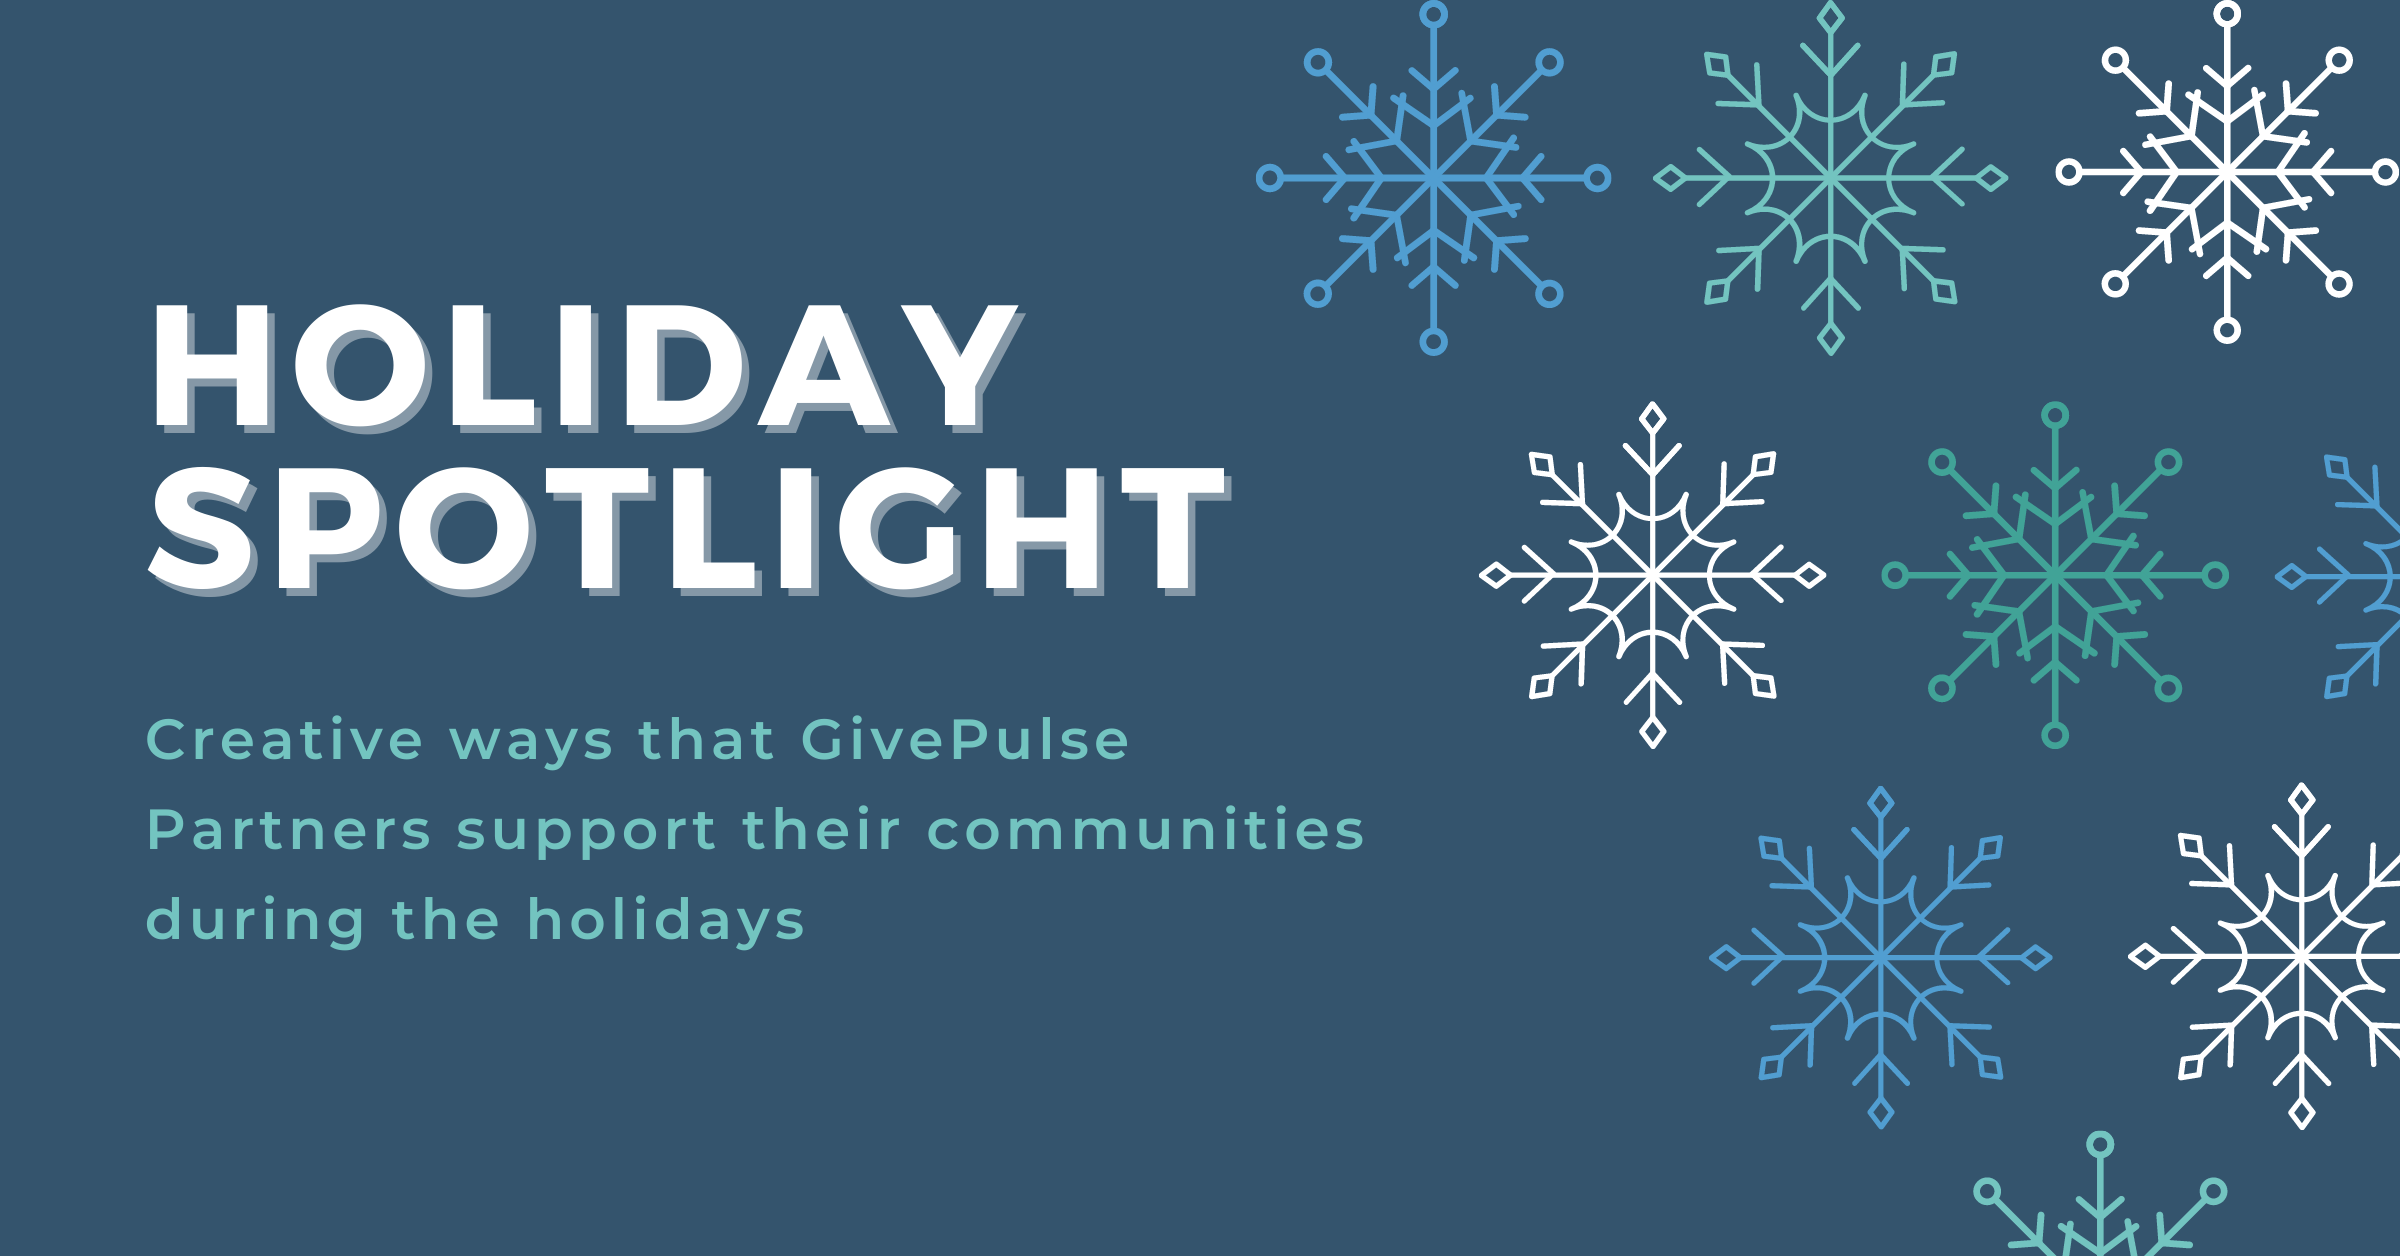 GivePulse Partner Holiday Spotlight - GivePulse Blog